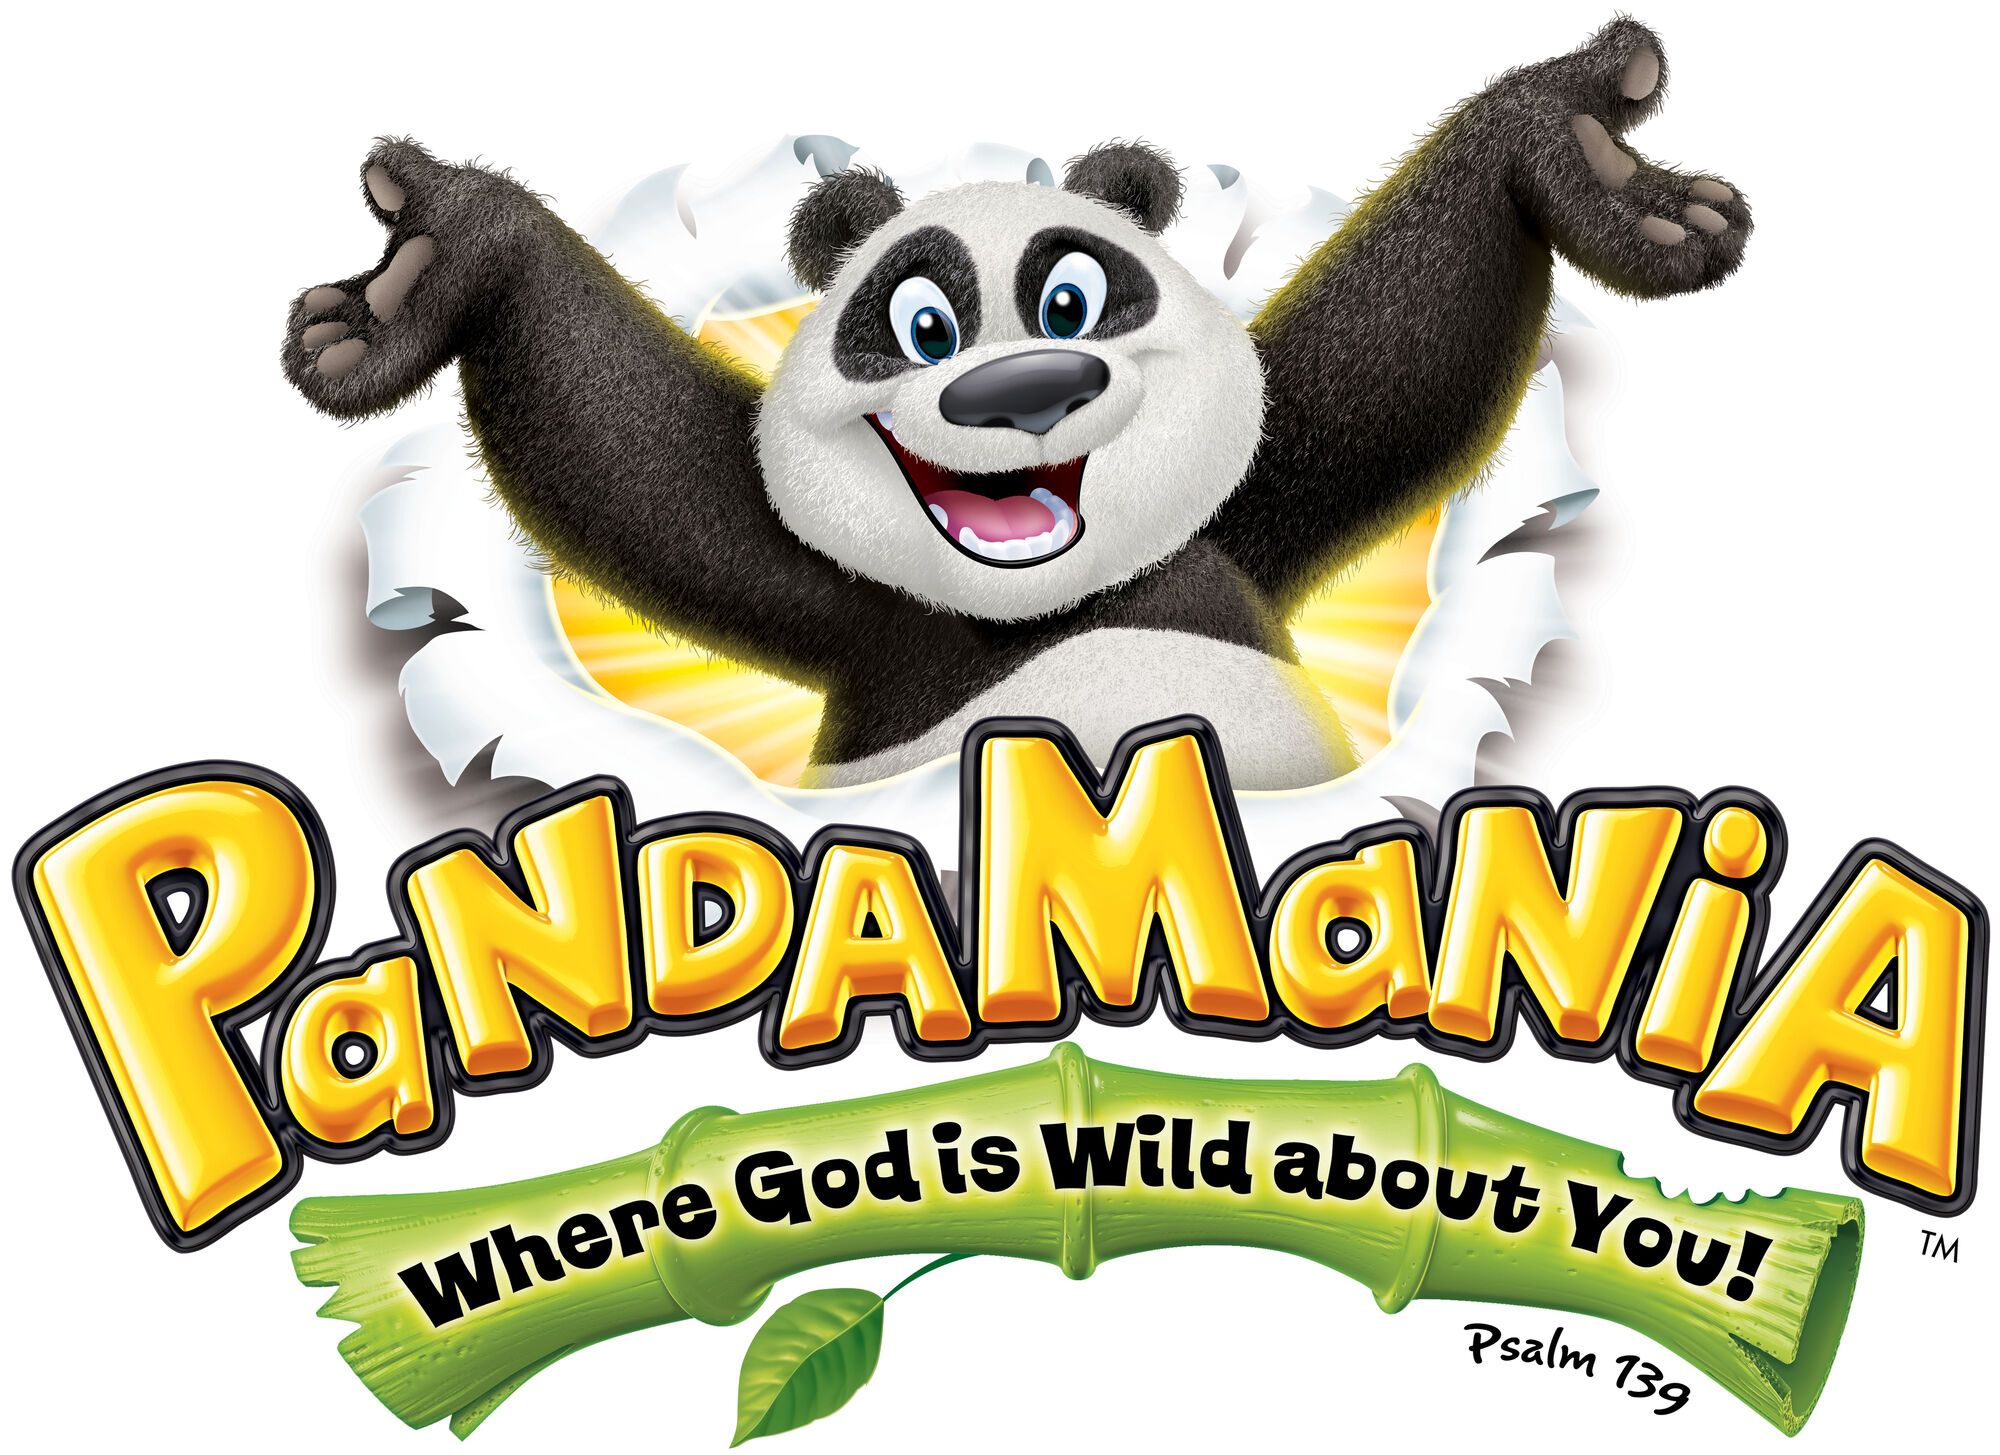 Pandamania Game